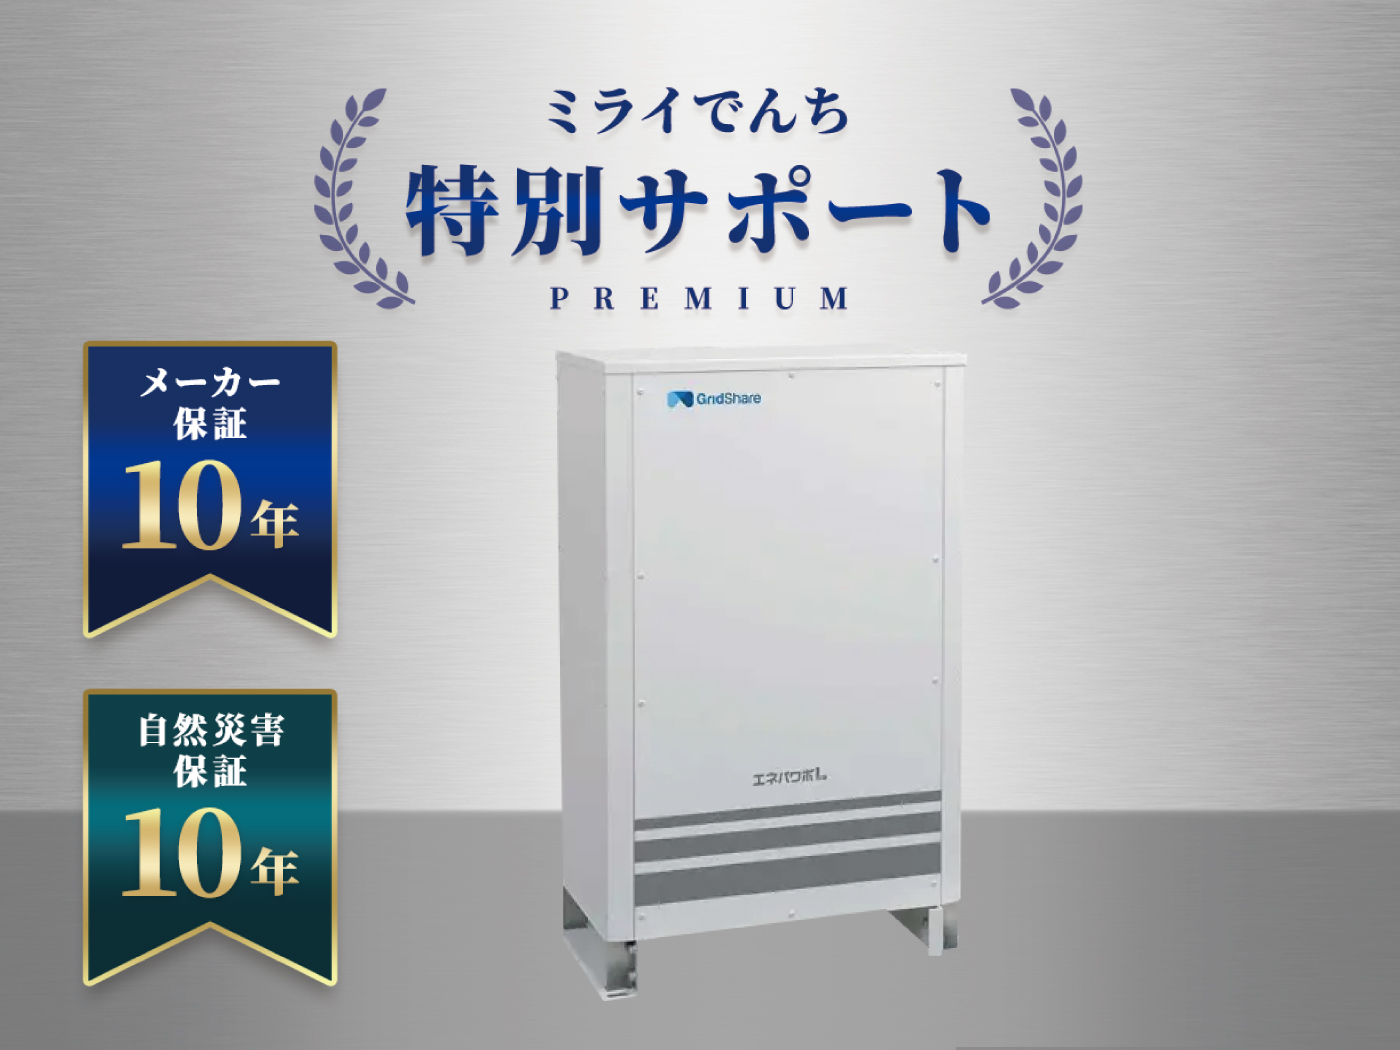 京セラ Enerezza(エネレッツァ)5.0kWh 蓄電池 最安価格No.1！EGS 